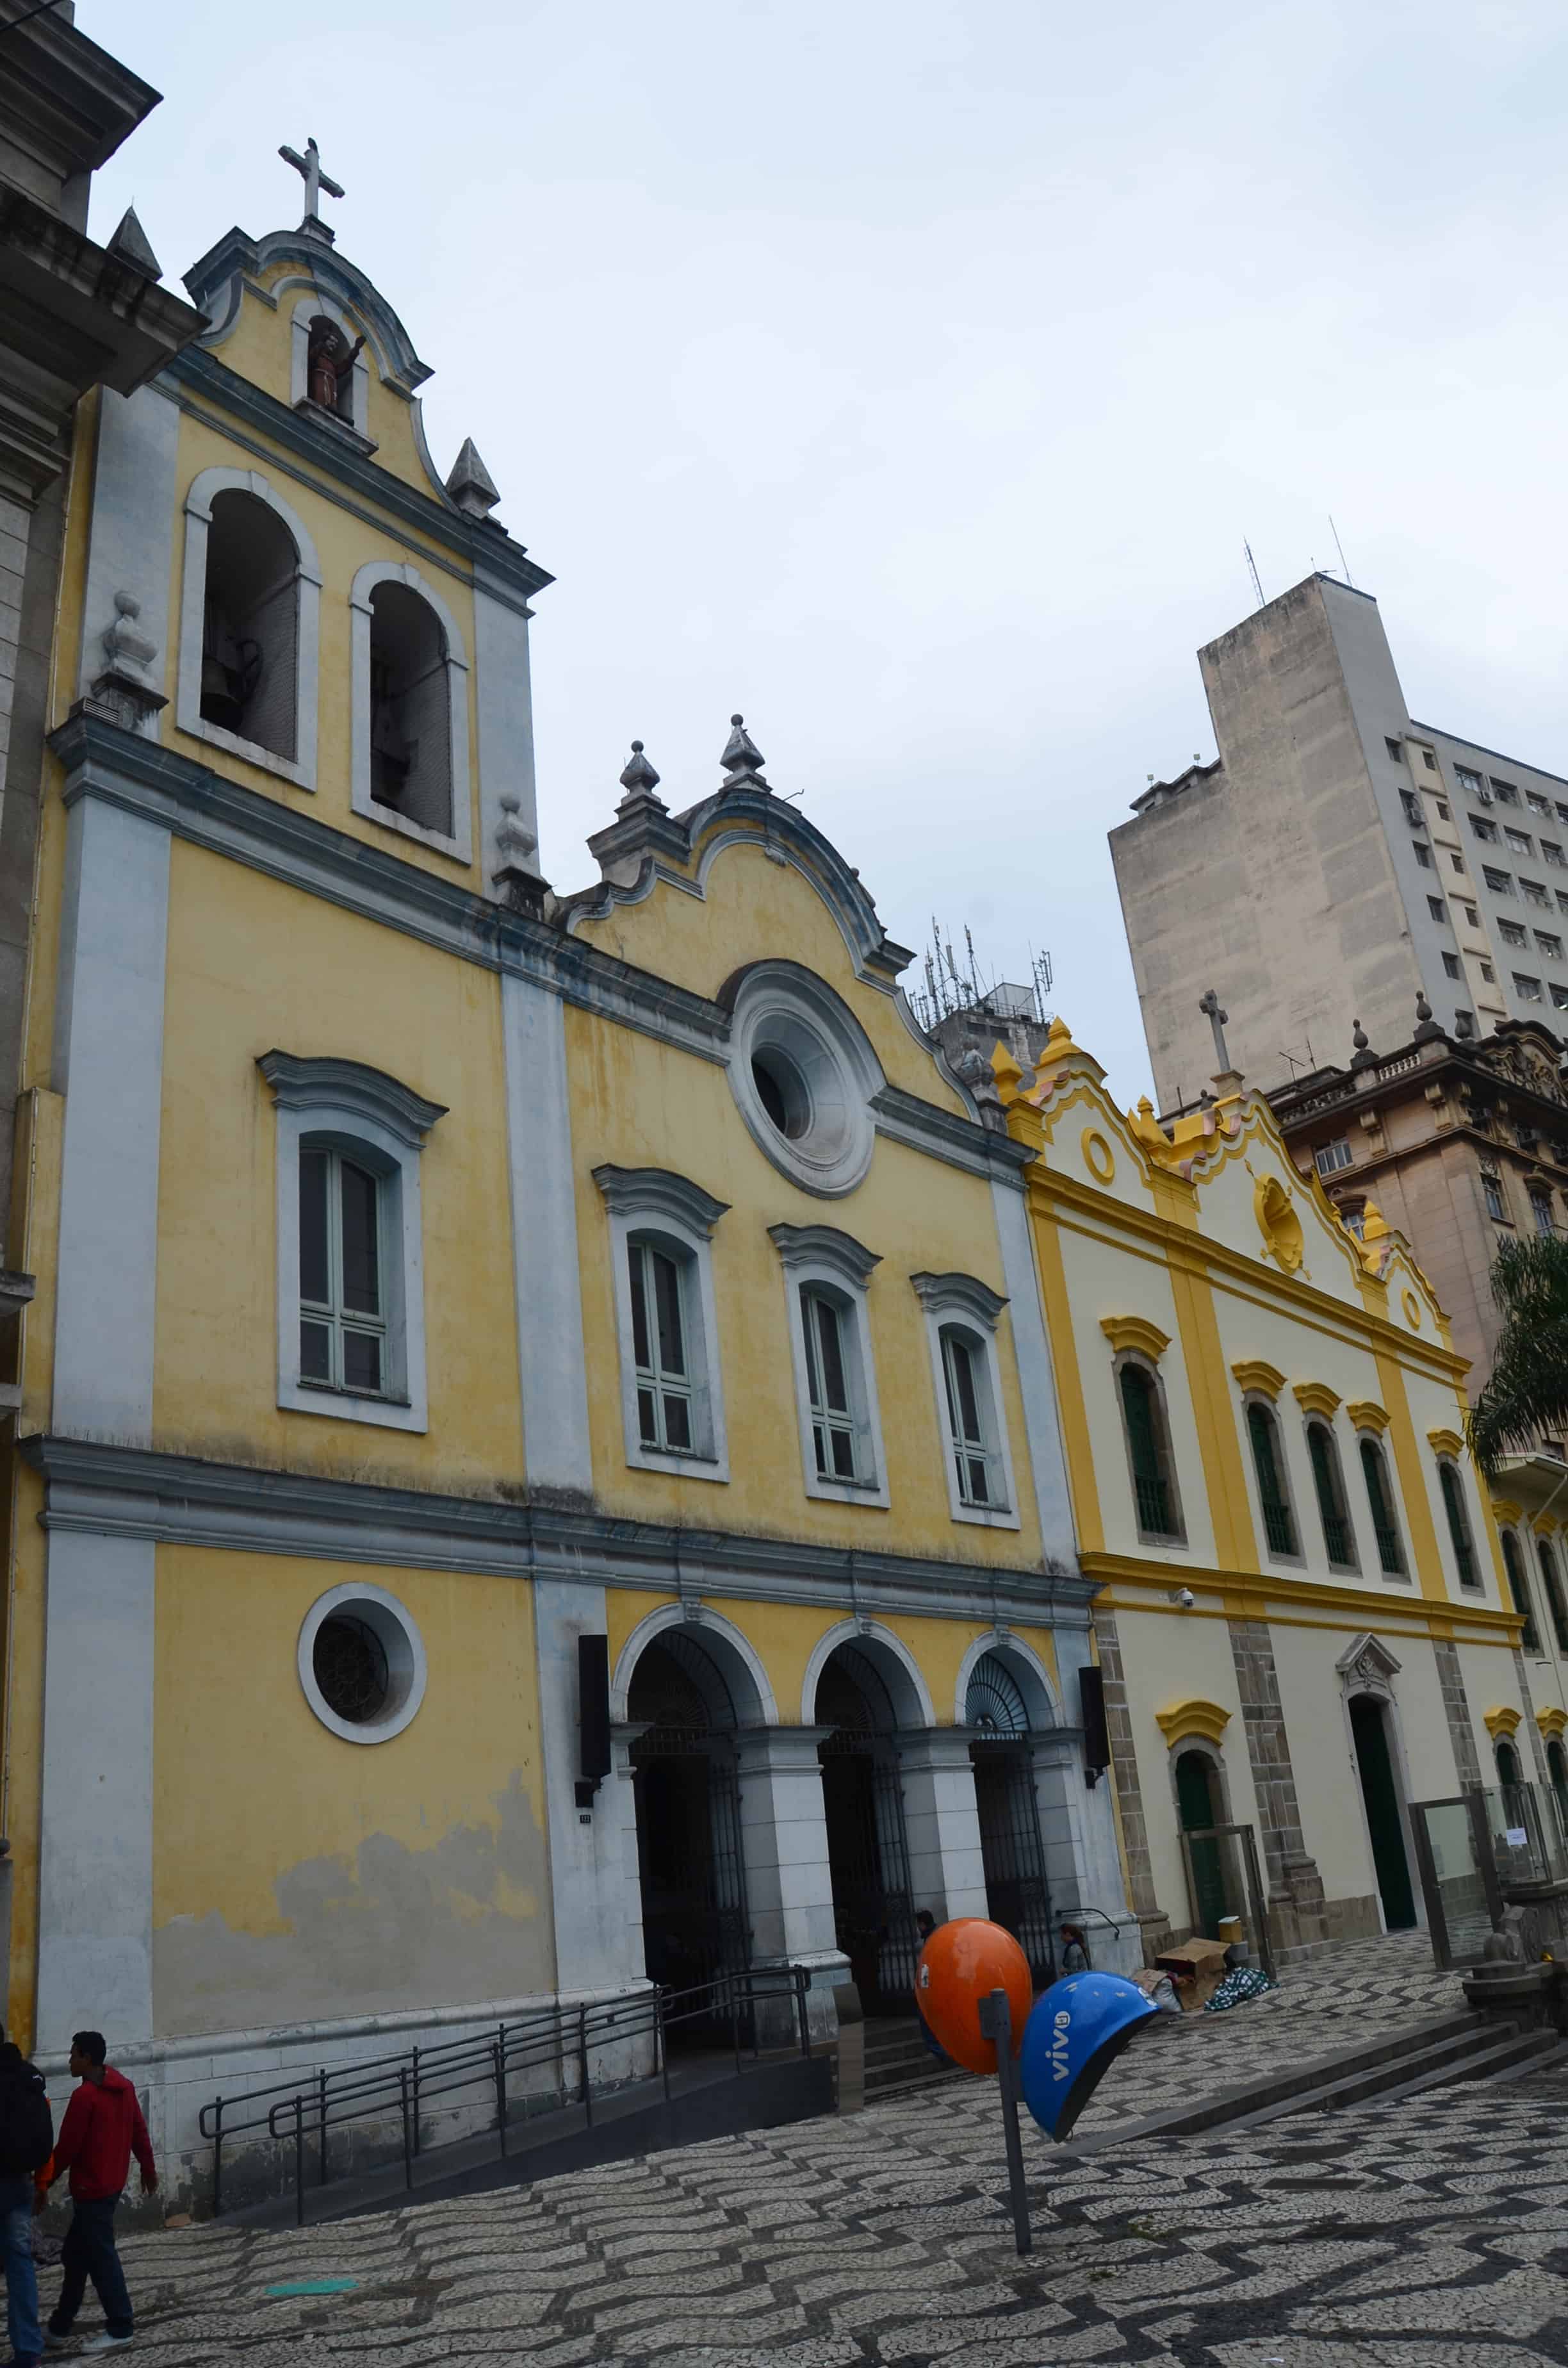 Igreja de São Francisco de Assis in São Paulo, Brazil